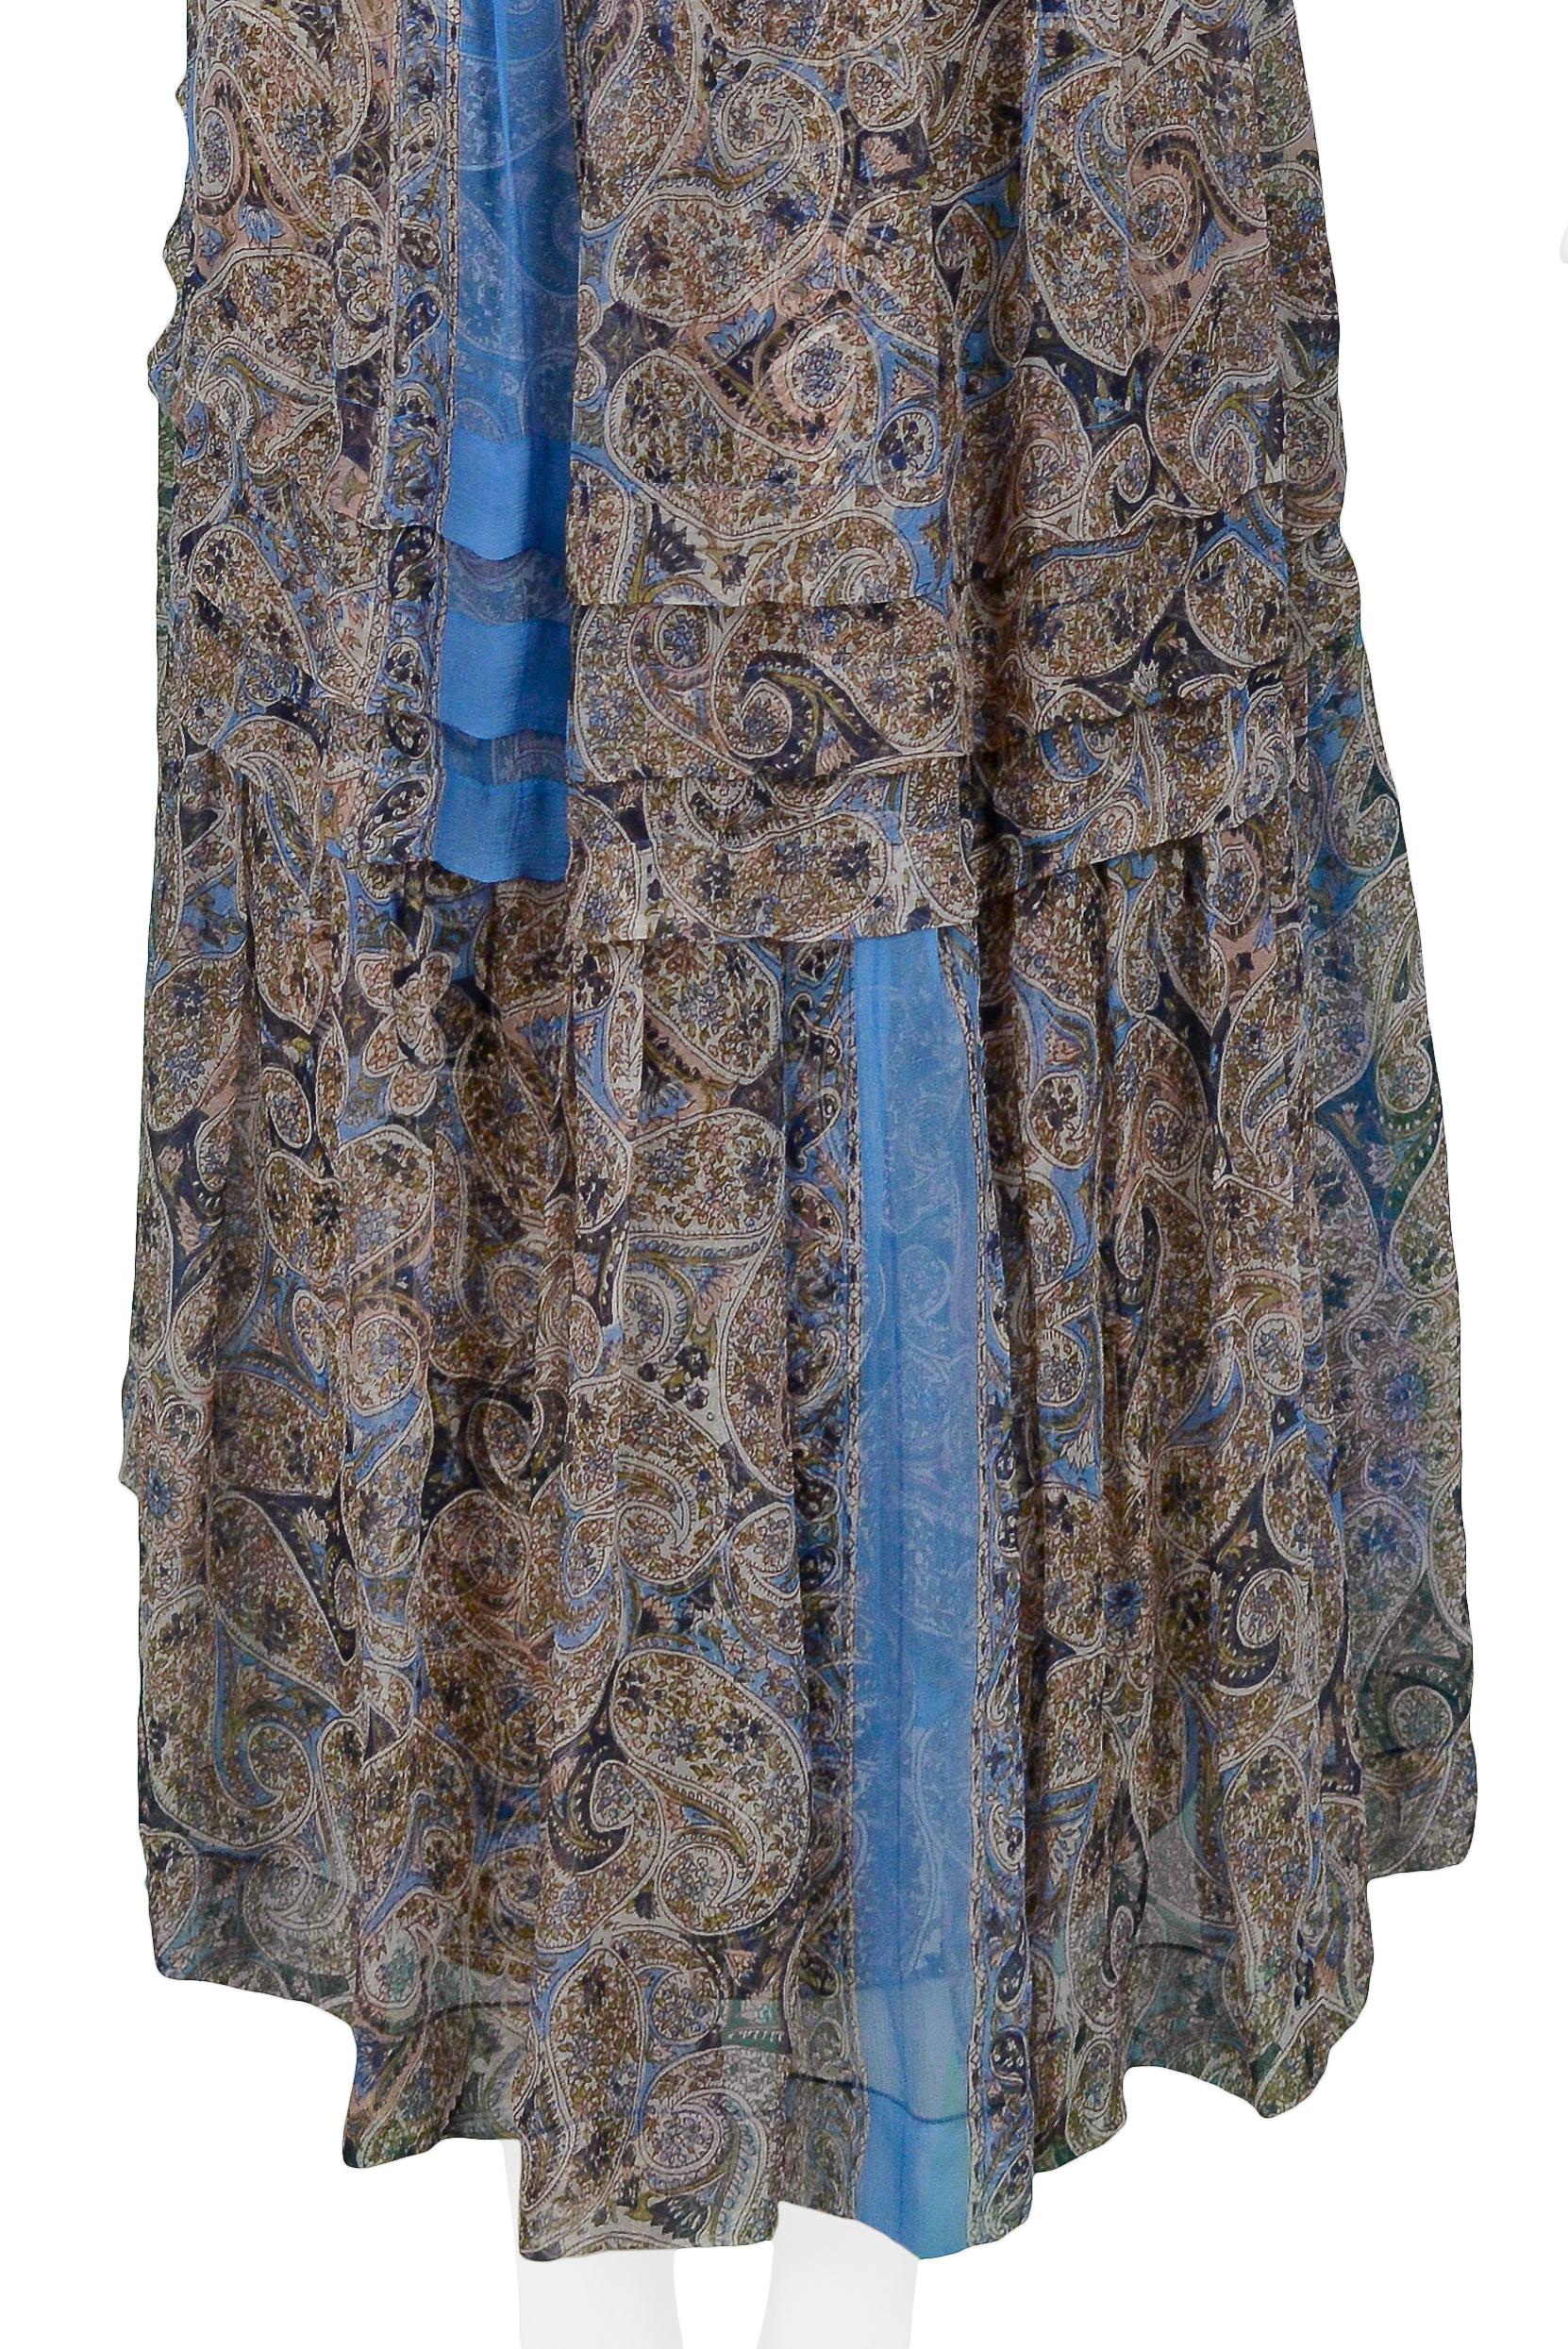 Robe de soirée vintage Balenciaga par Nicolas Ghesquiere style bohème, 2005 4